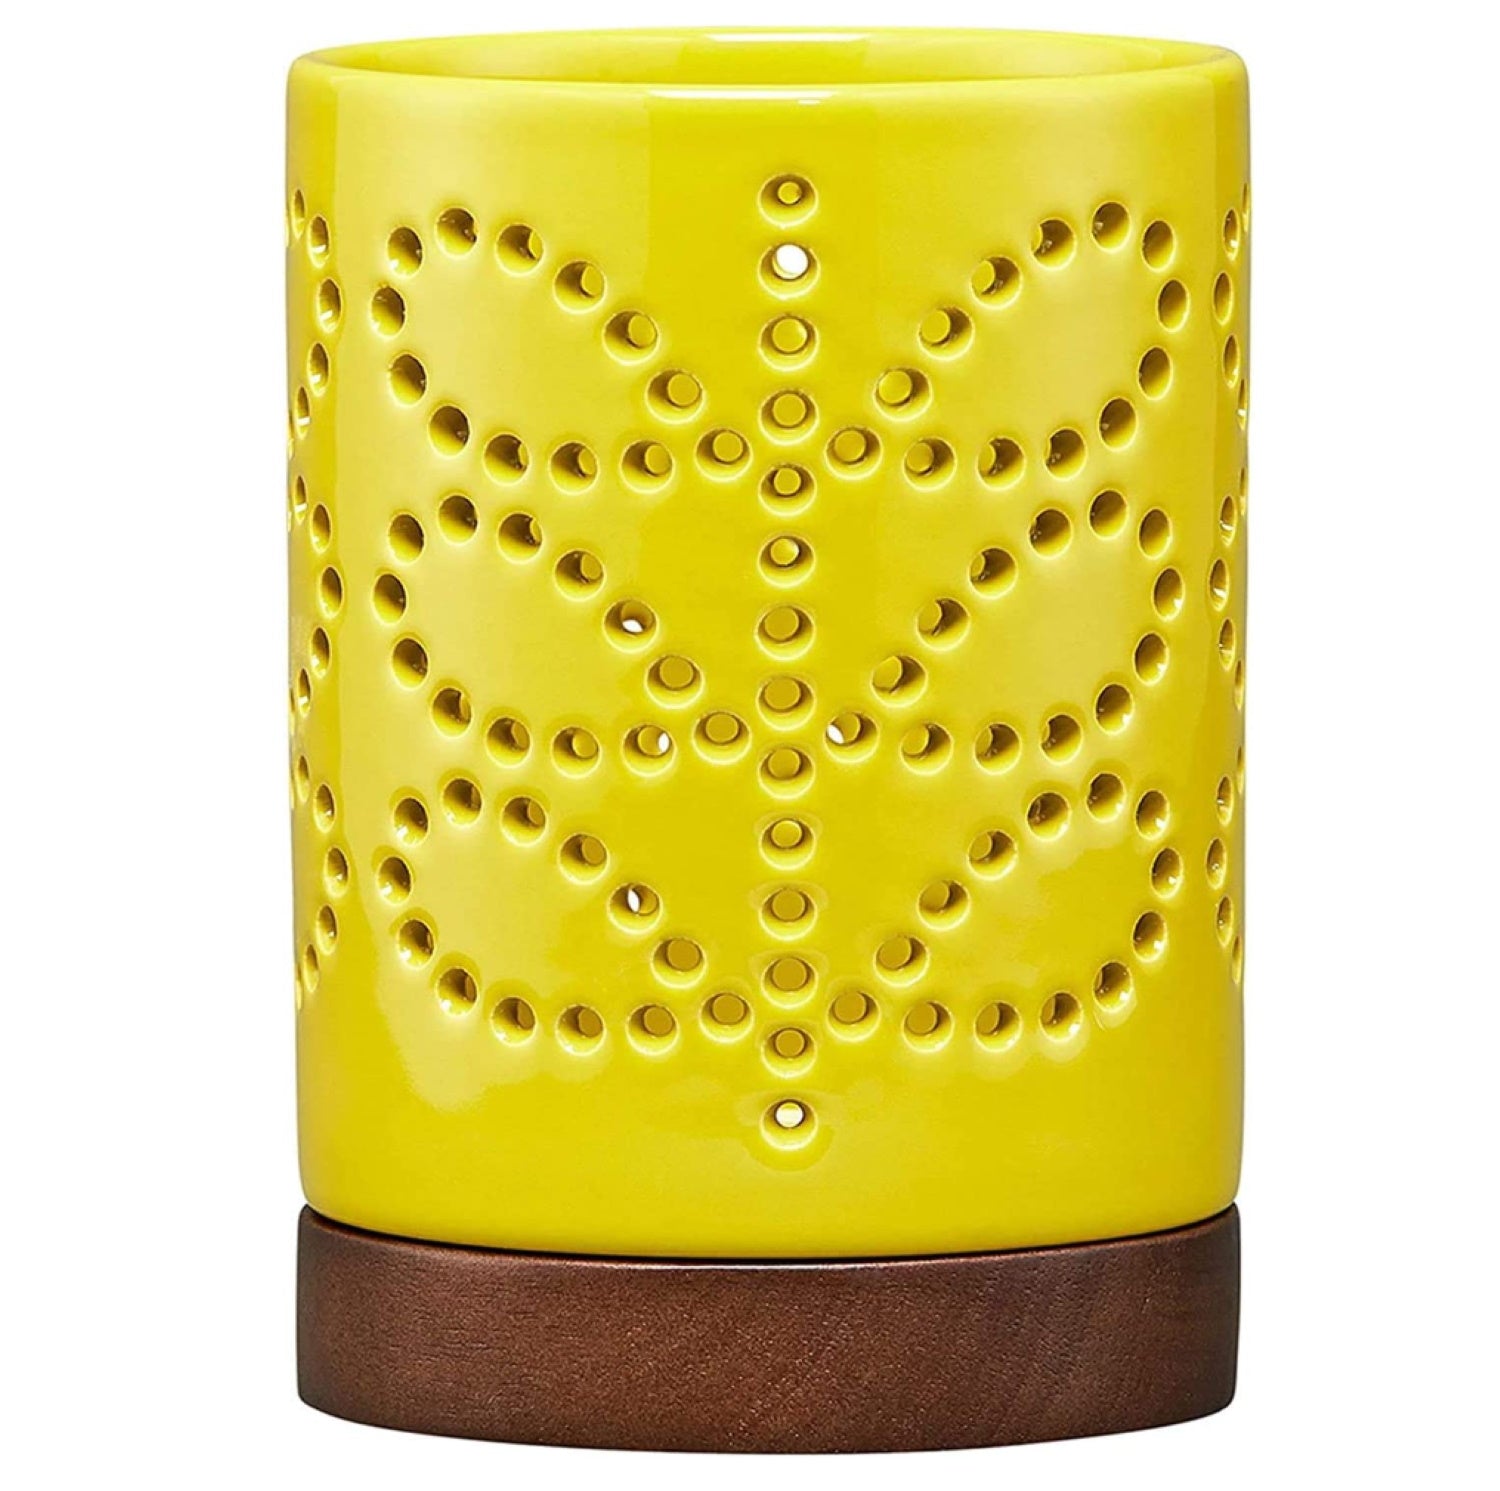 Orla Kiely Large Ceramic Candle Holder (Sunflower)